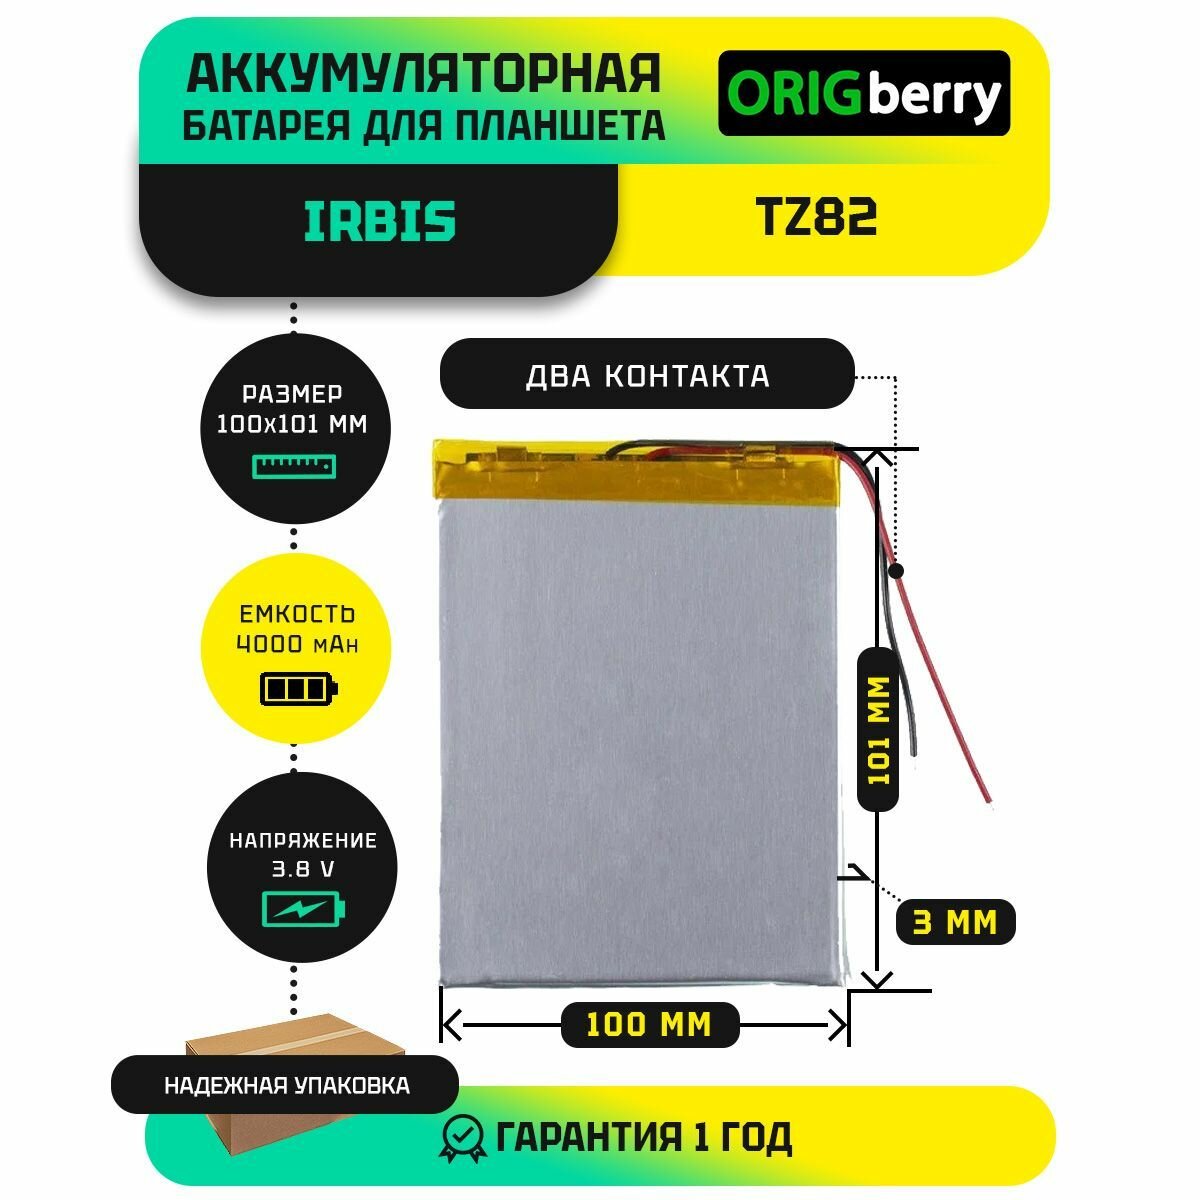 Аккумулятор для планшета Irbis TZ82 3G 38 V / 4000 mAh / 101мм x 100мм x 3мм / без коннектора